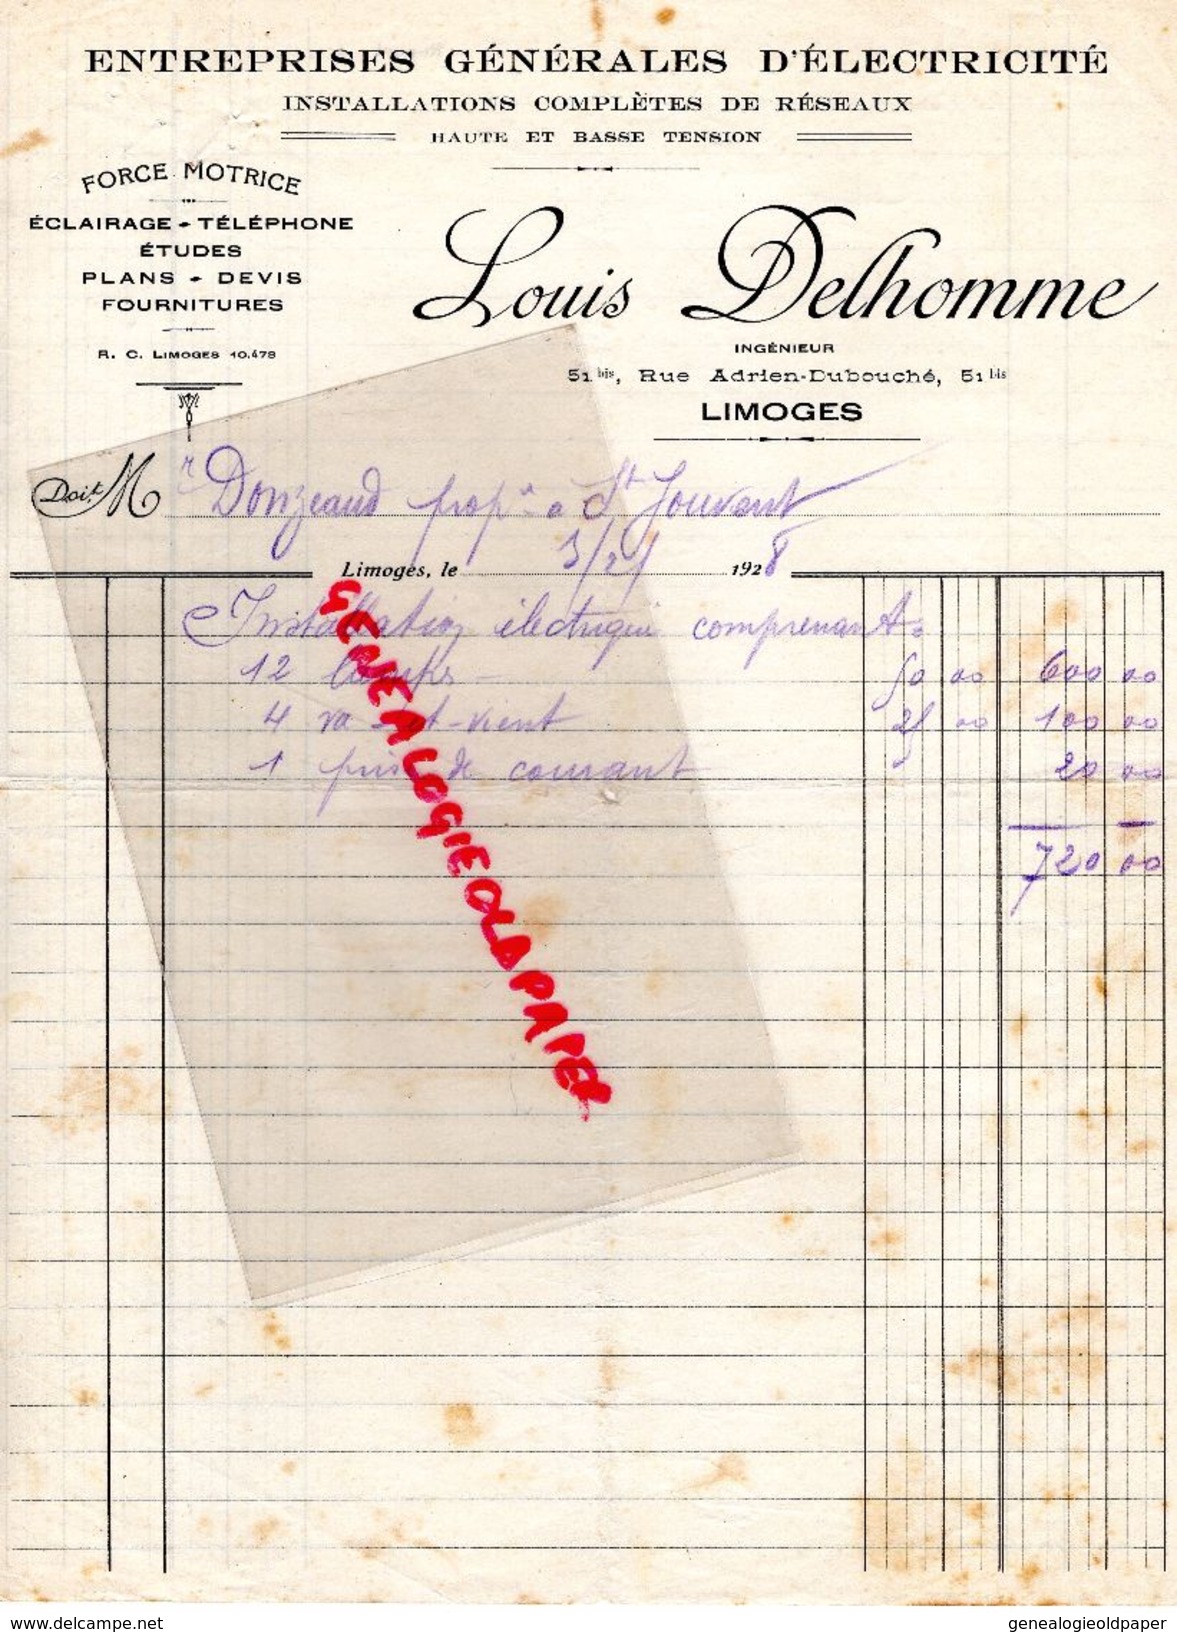 87 - LIMOGES - FACTURE LOUIS DELHOMME -INGENIEUR 51 RUE ADRIEN DUBOUCHE- ELECTRICITE FORCE MOTRICE- 1928 - Electricité & Gaz